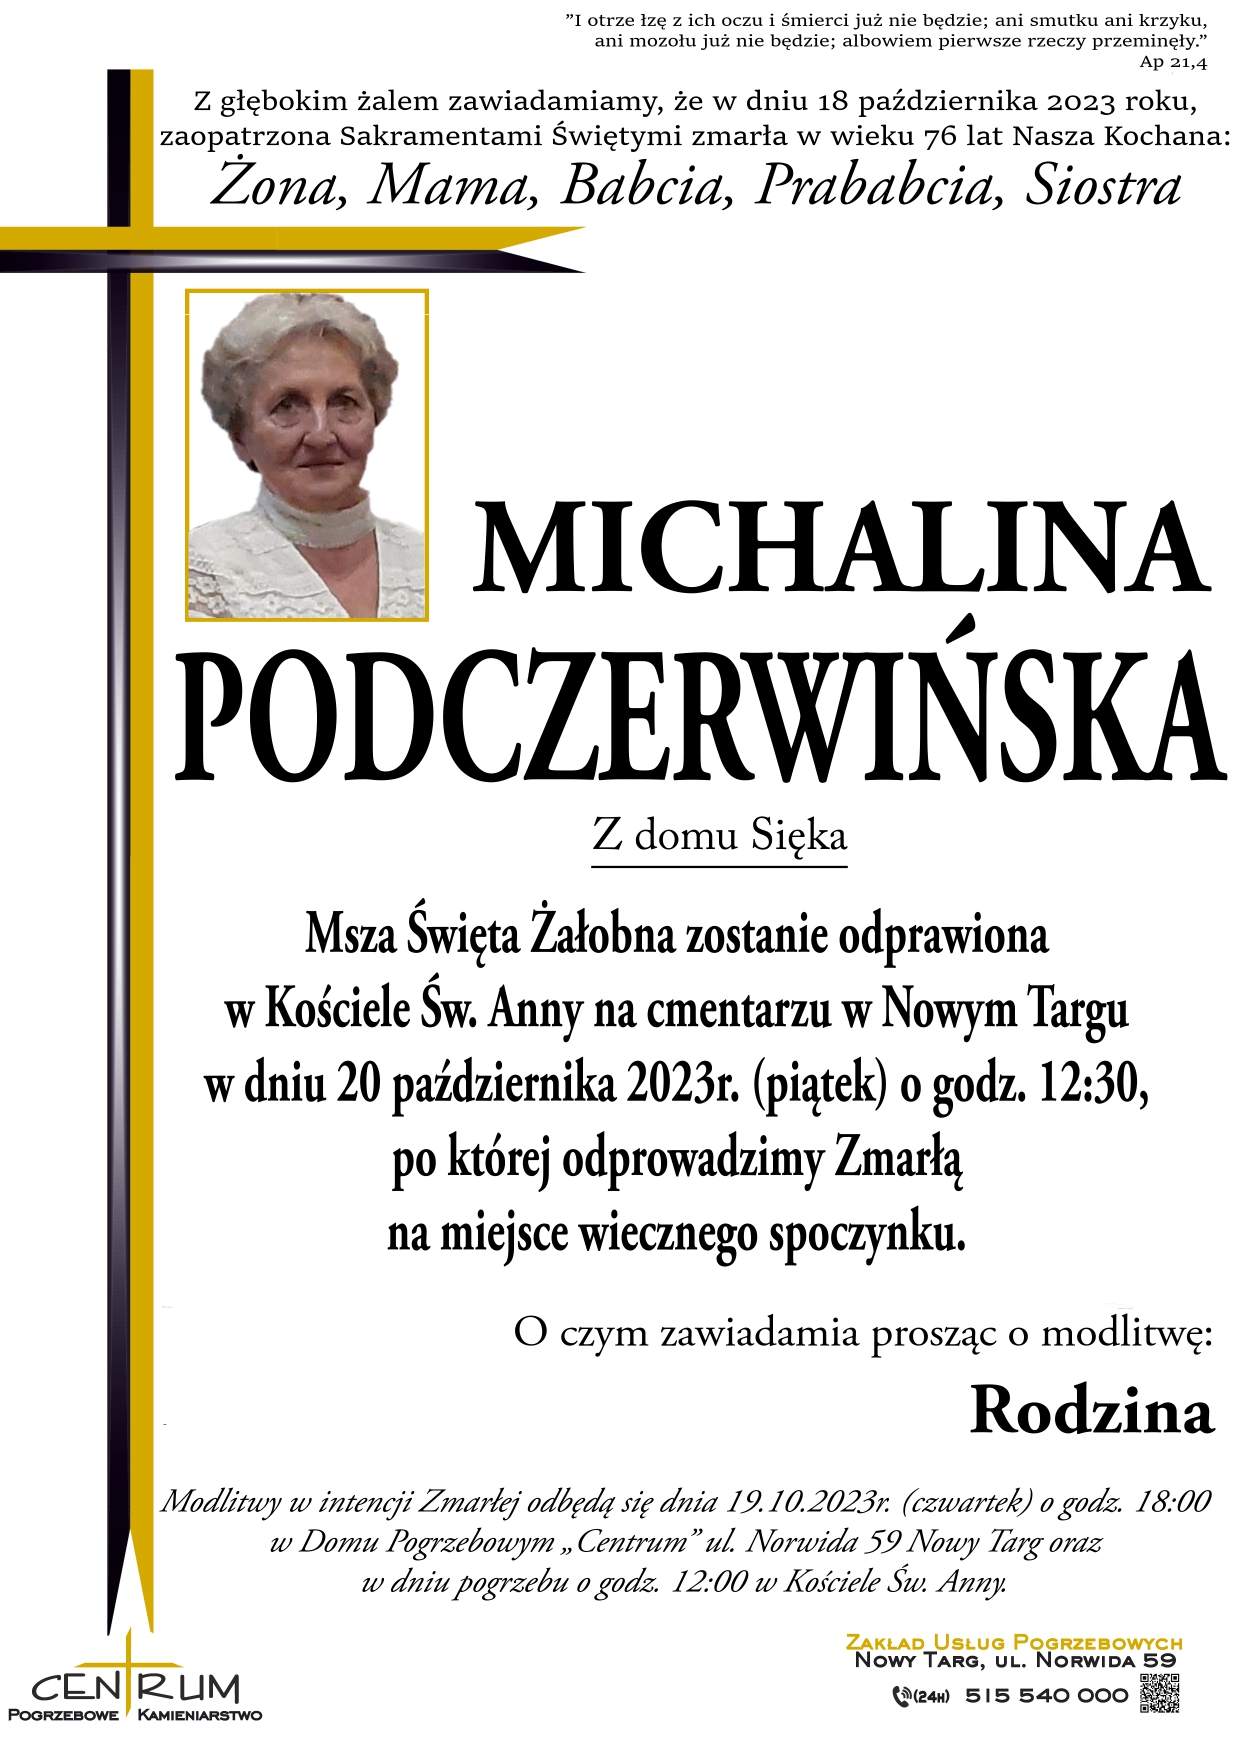 Michalina Podczerwińska